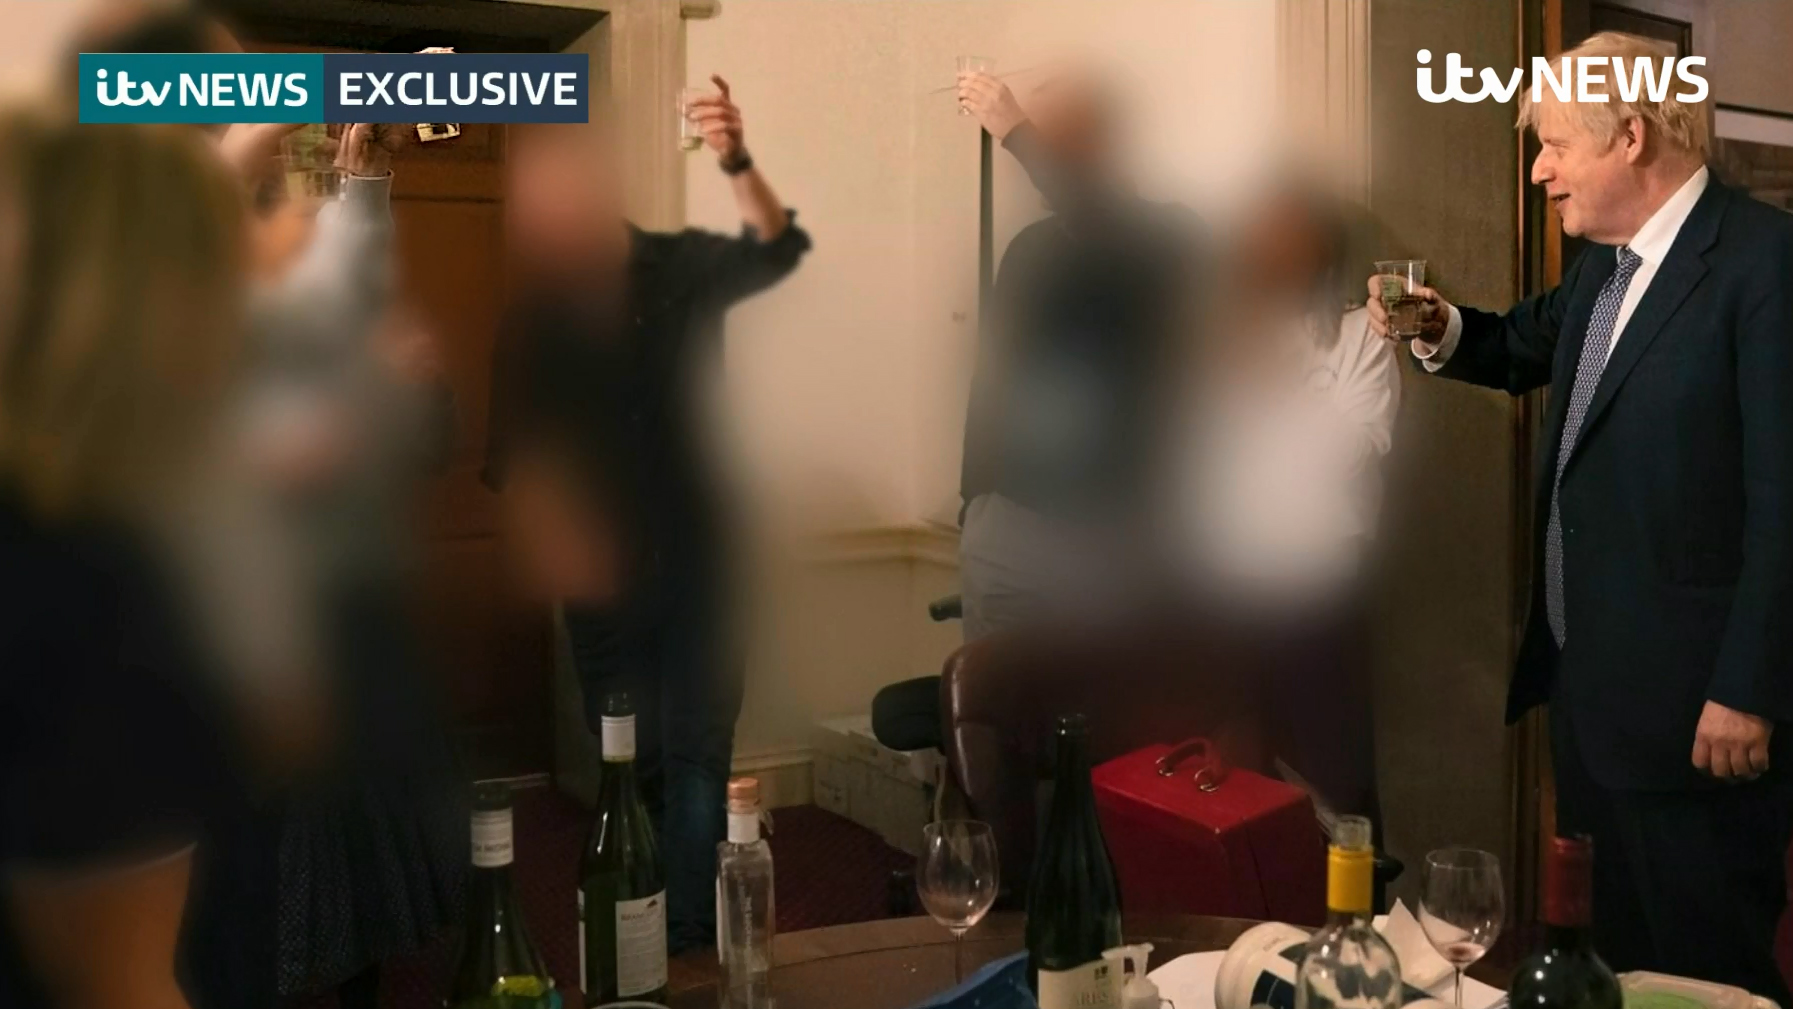 Nuevas fotos muestran a Boris Johnson, copa en mano, en una fiesta durante el confinamiento